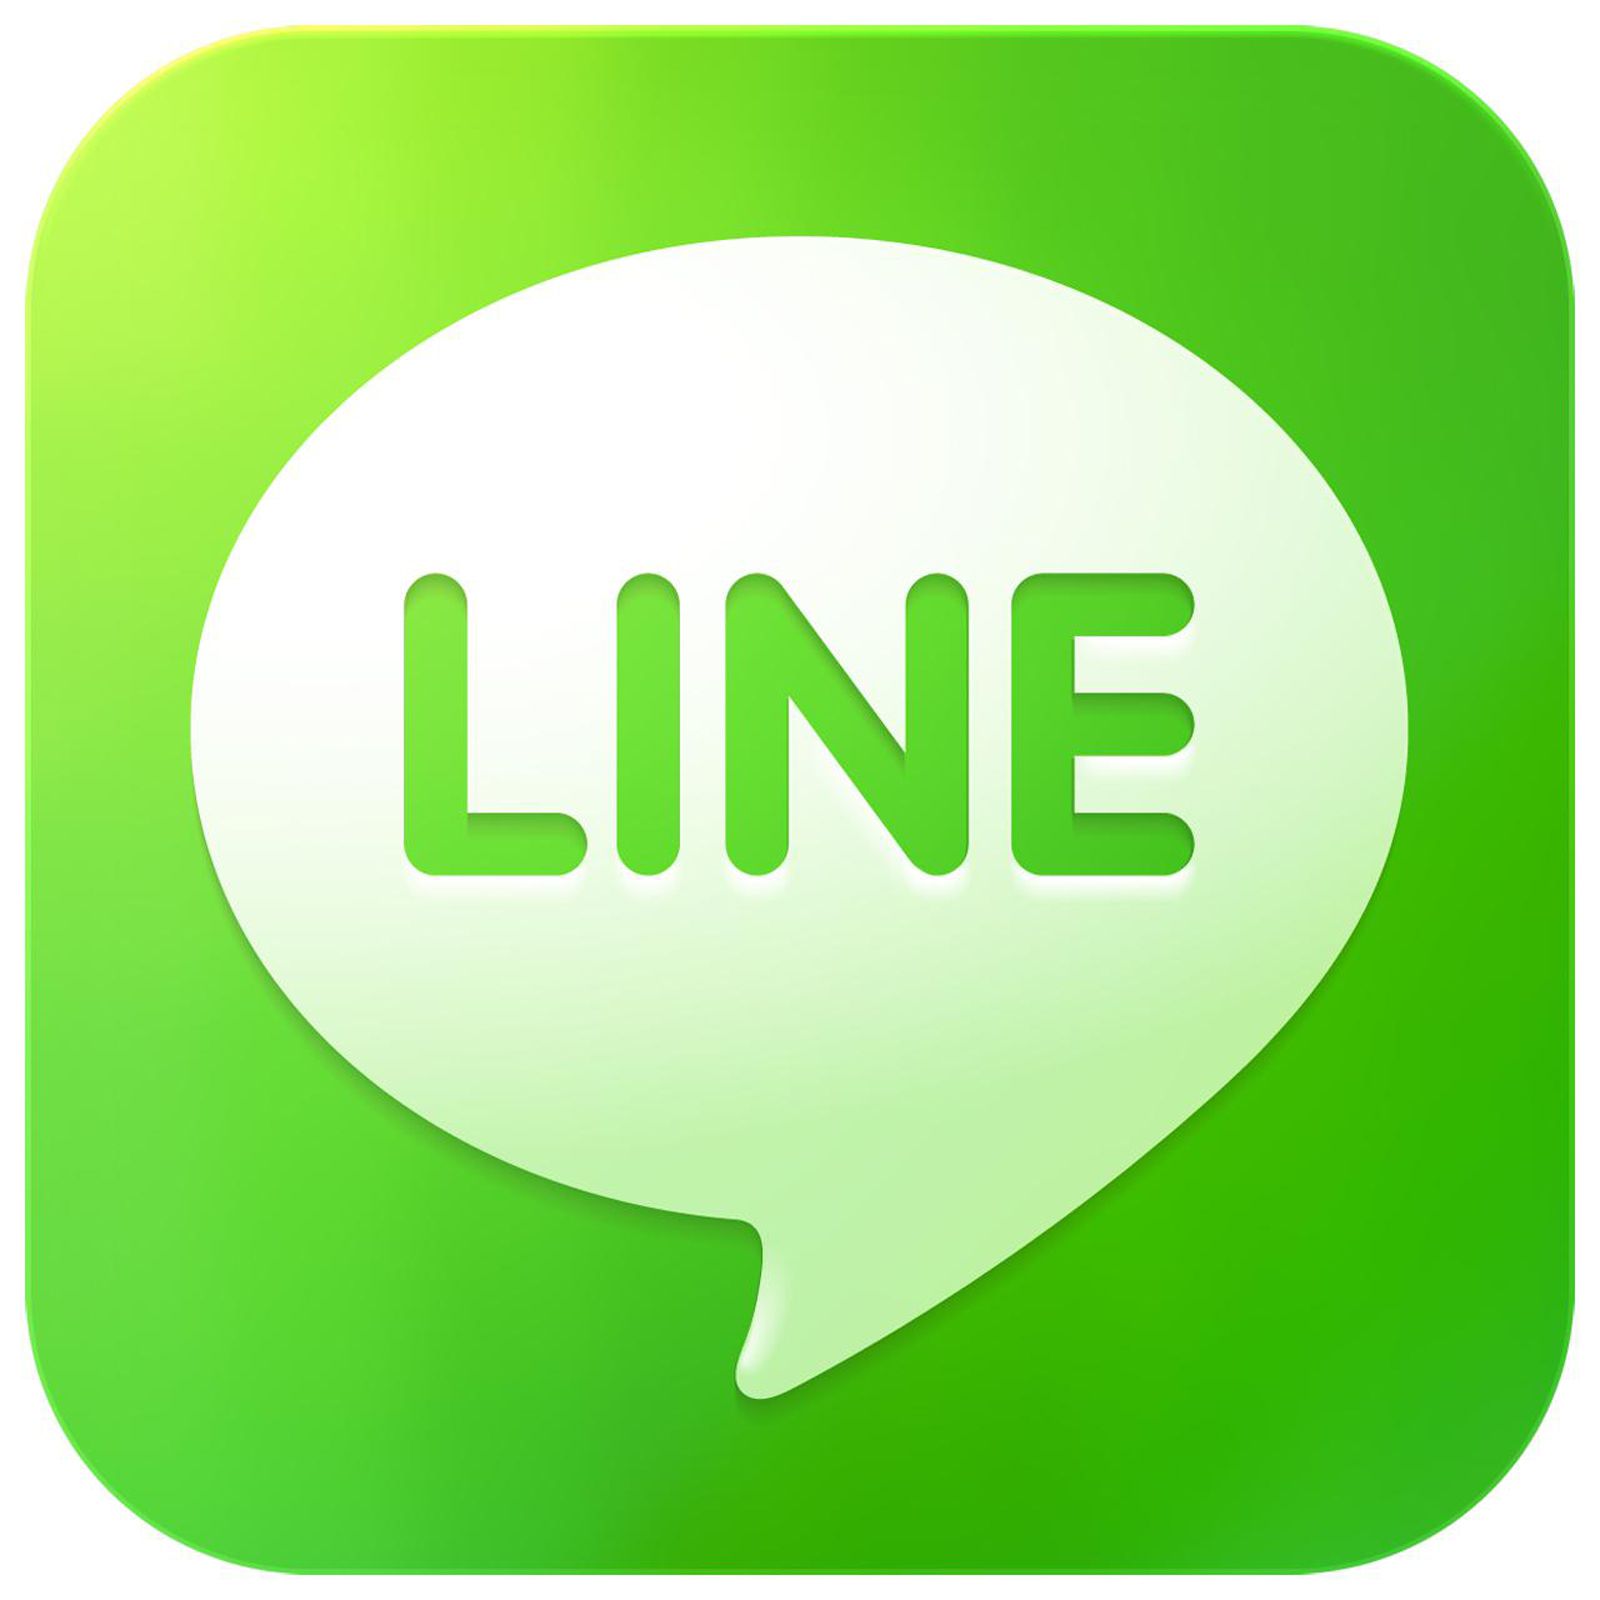 Logo line